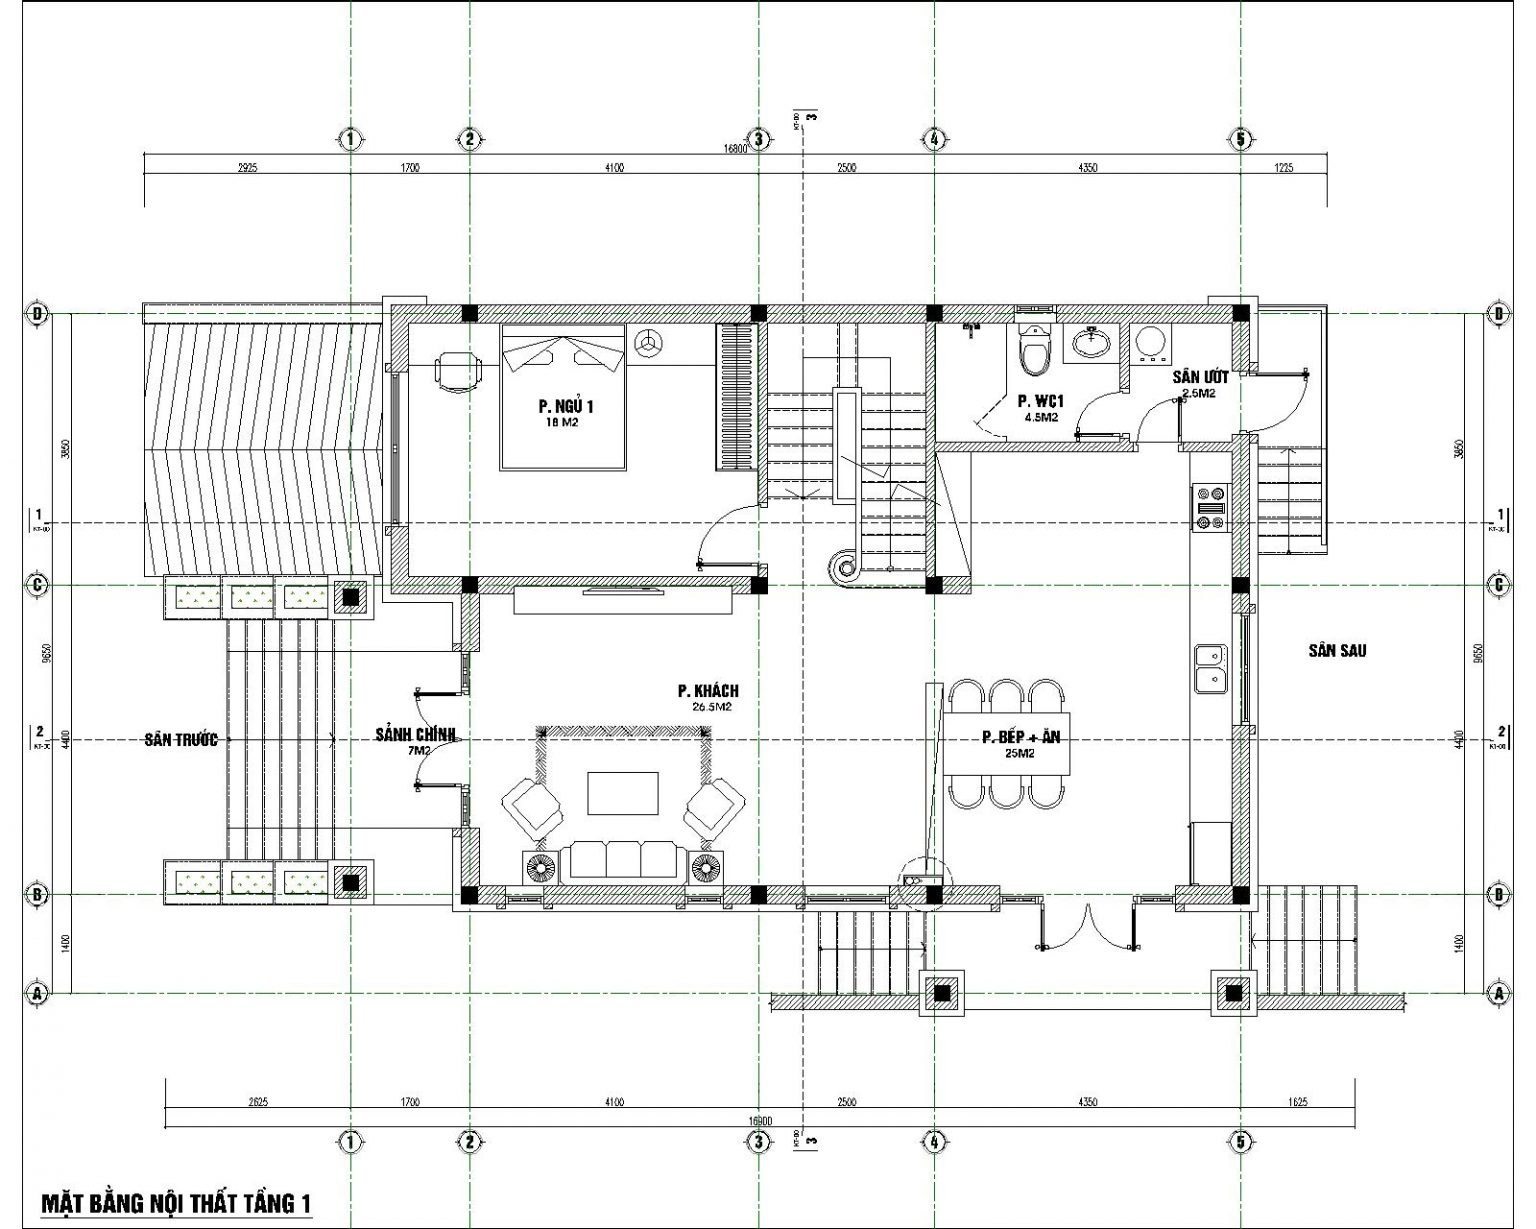 15 mẫu nhà 2 tầng chữ L 100m2 thoải mái cho gia đình đông người